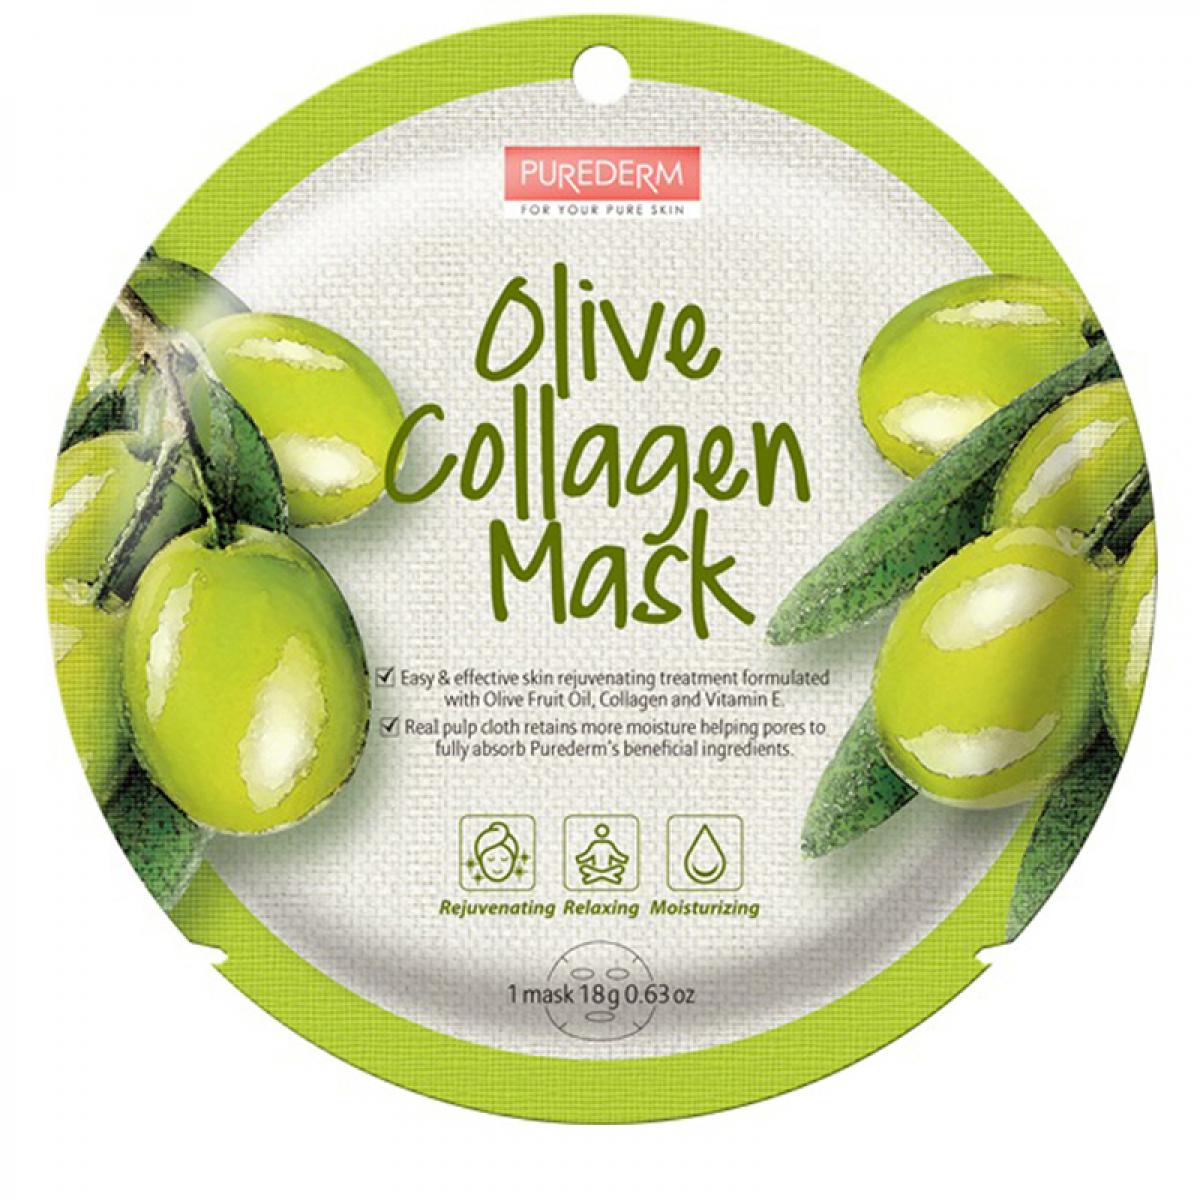 ماسک نقابی کلاژنه حاوی عصاره زیتون وزن 18 گرم - Purederm Olive Collagen Mask 18gr